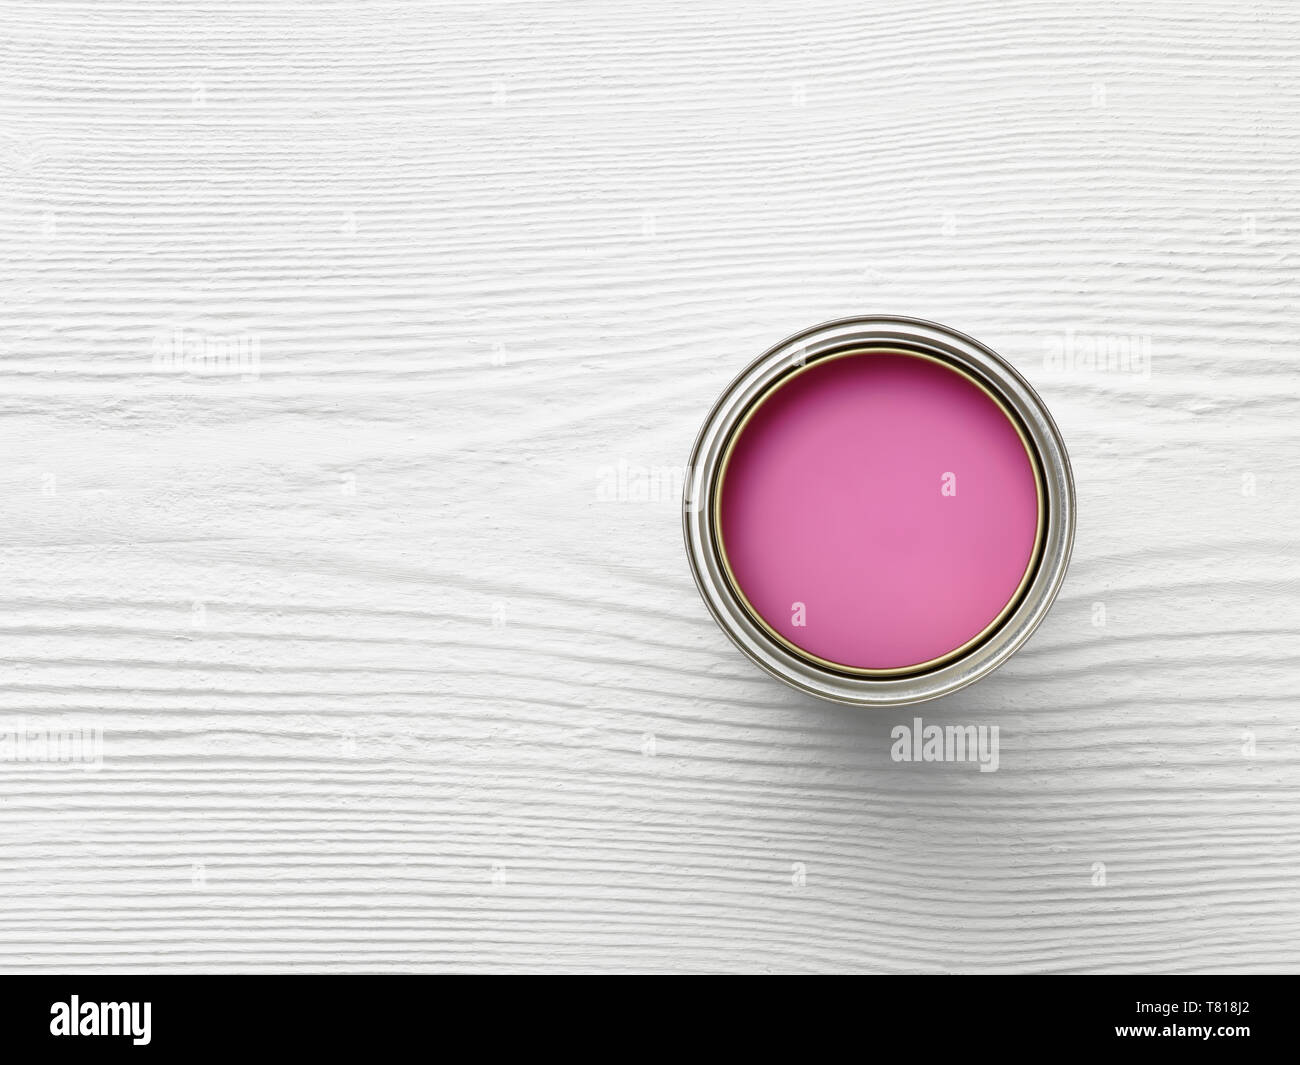 photo de dessus de la tête d'un pot de peinture sur la surface de bois blanc avec peinture rose Banque D'Images